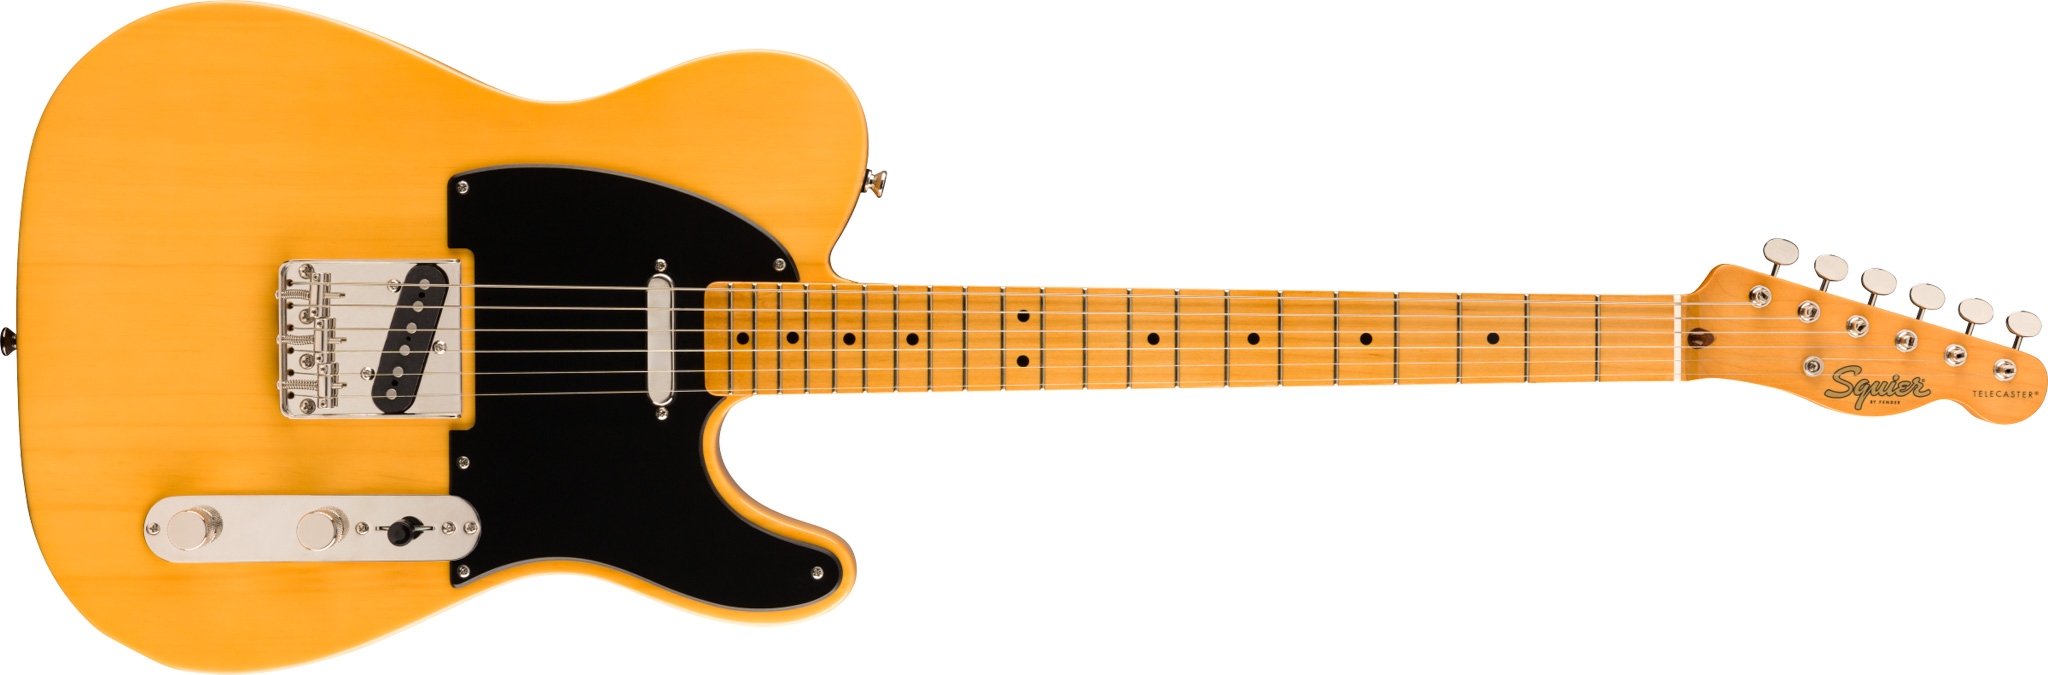 Fender Squier Classic Vibe '50s Telecaster elektrisk gitar